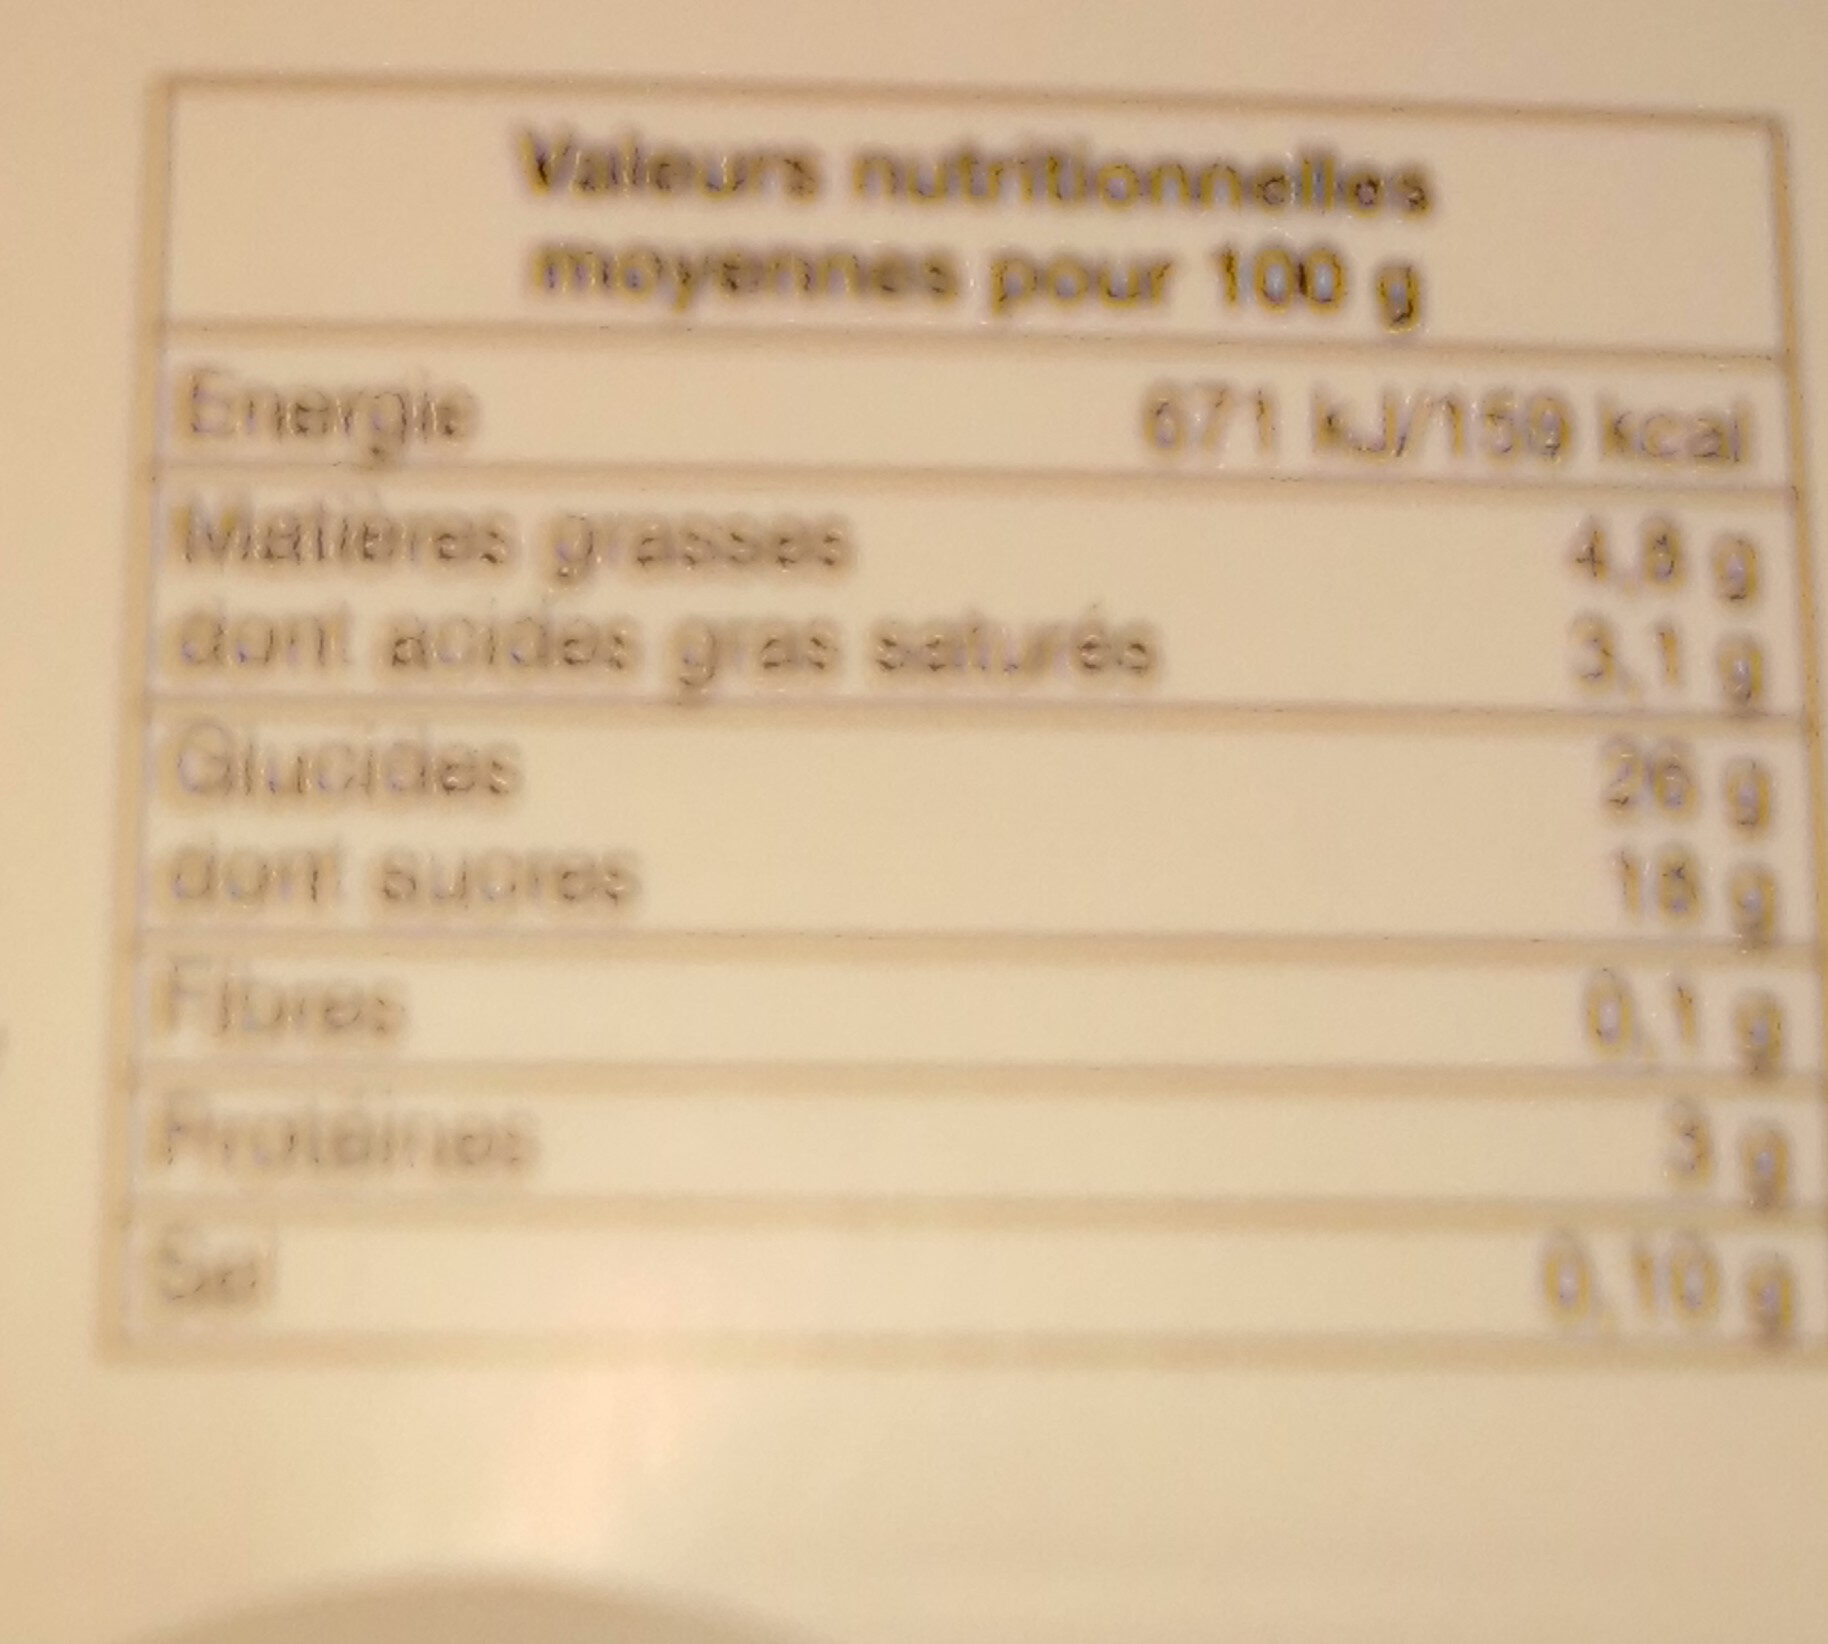 Mon riz au lait caramel - Nutrition facts - fr